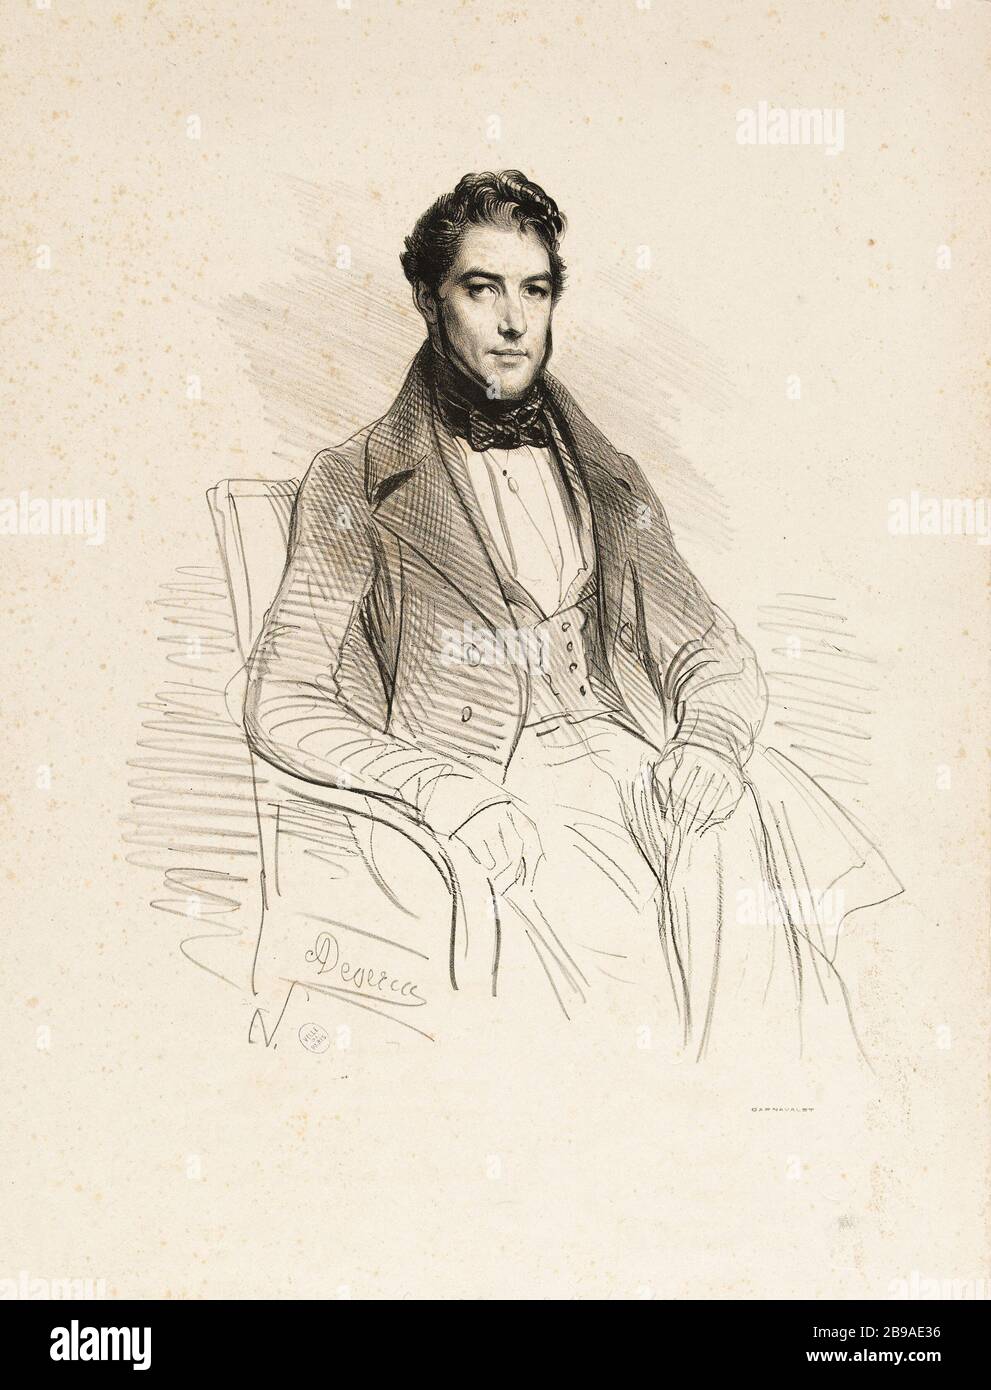 Porträt von Goupil, Prints Editor. Achille Devéria (1800-1857). Portrait de Goupil, éditeur d'estampes. Lithographie, 1831. Paris, musée Carnavalet. Stockfoto